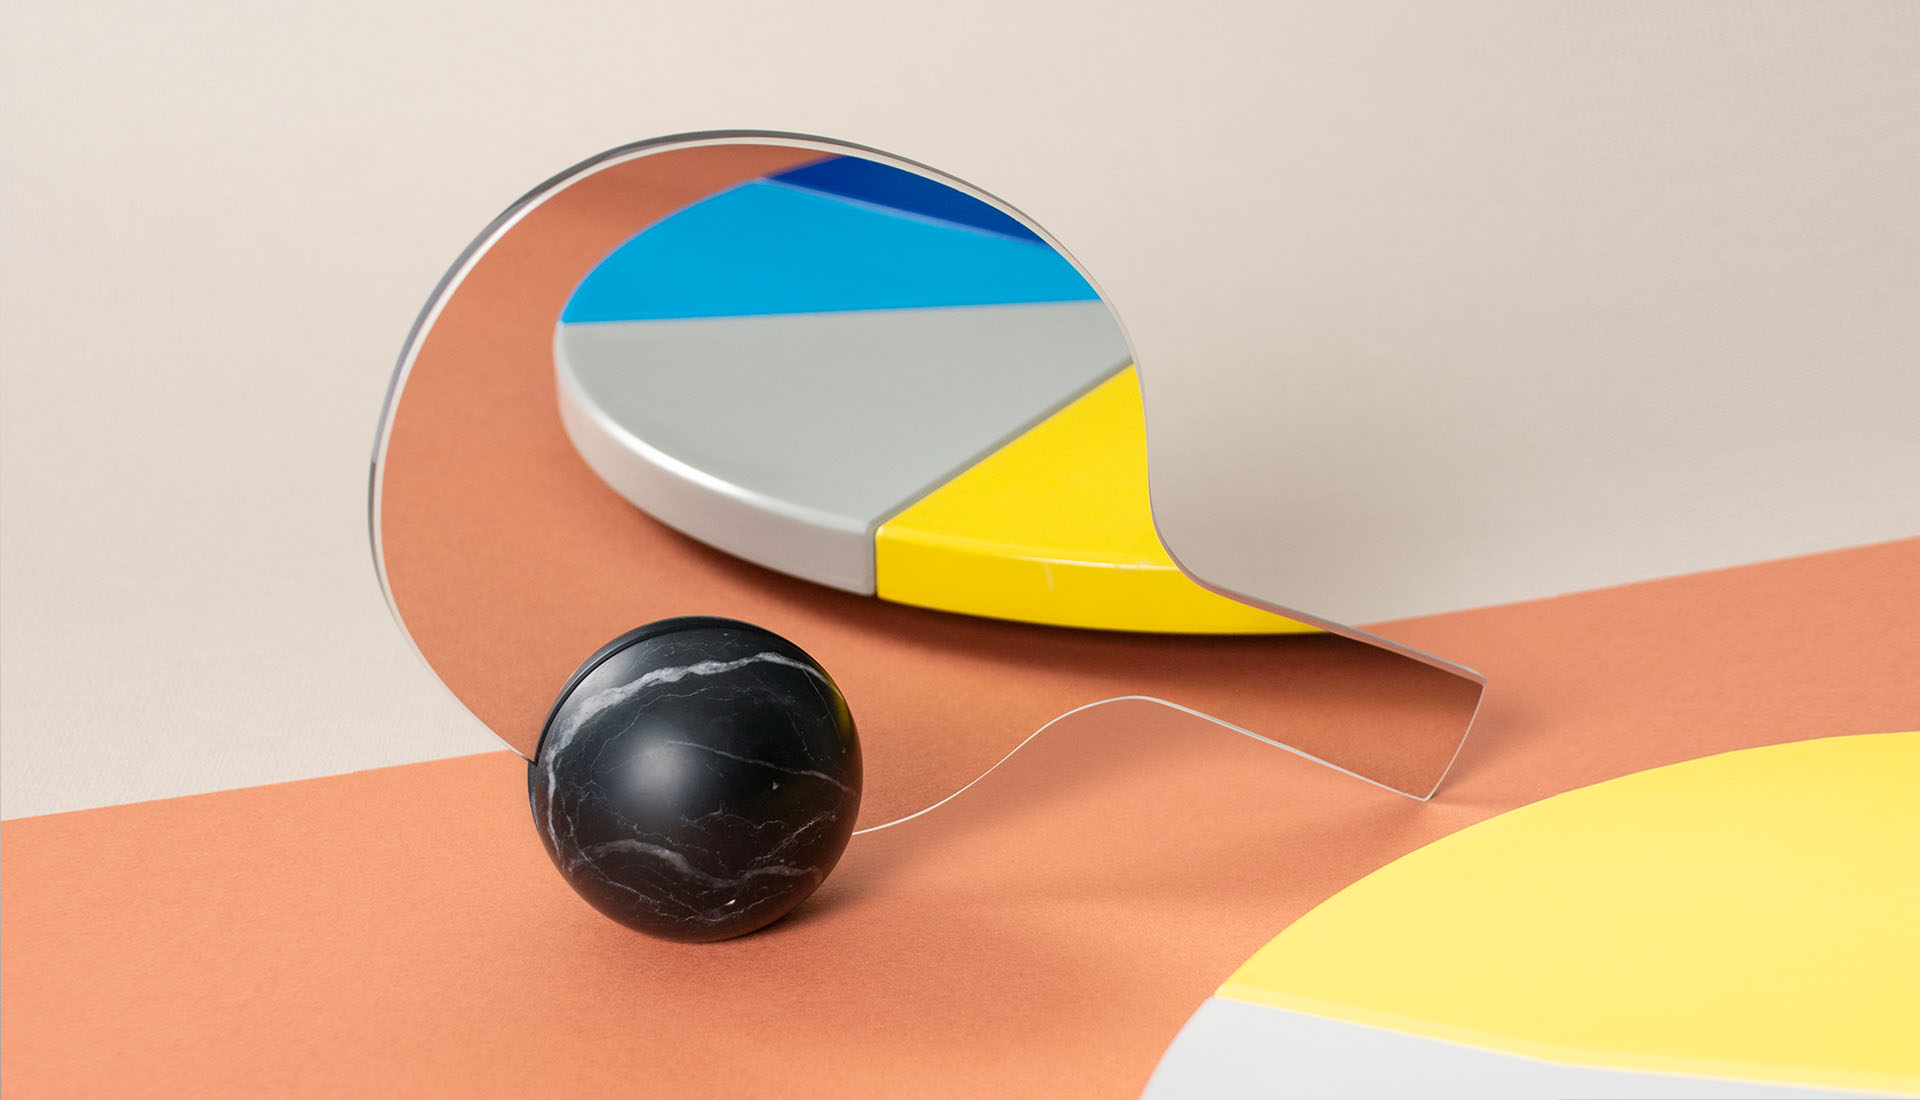 Un'interpretazione ironica dell'idea di sfidare l'immagine riflessa nello specchio, lo specchio da tavolo bifacciale Match ha la forma di una racchetta da ping pong poggiata su una sfera di marmo nero